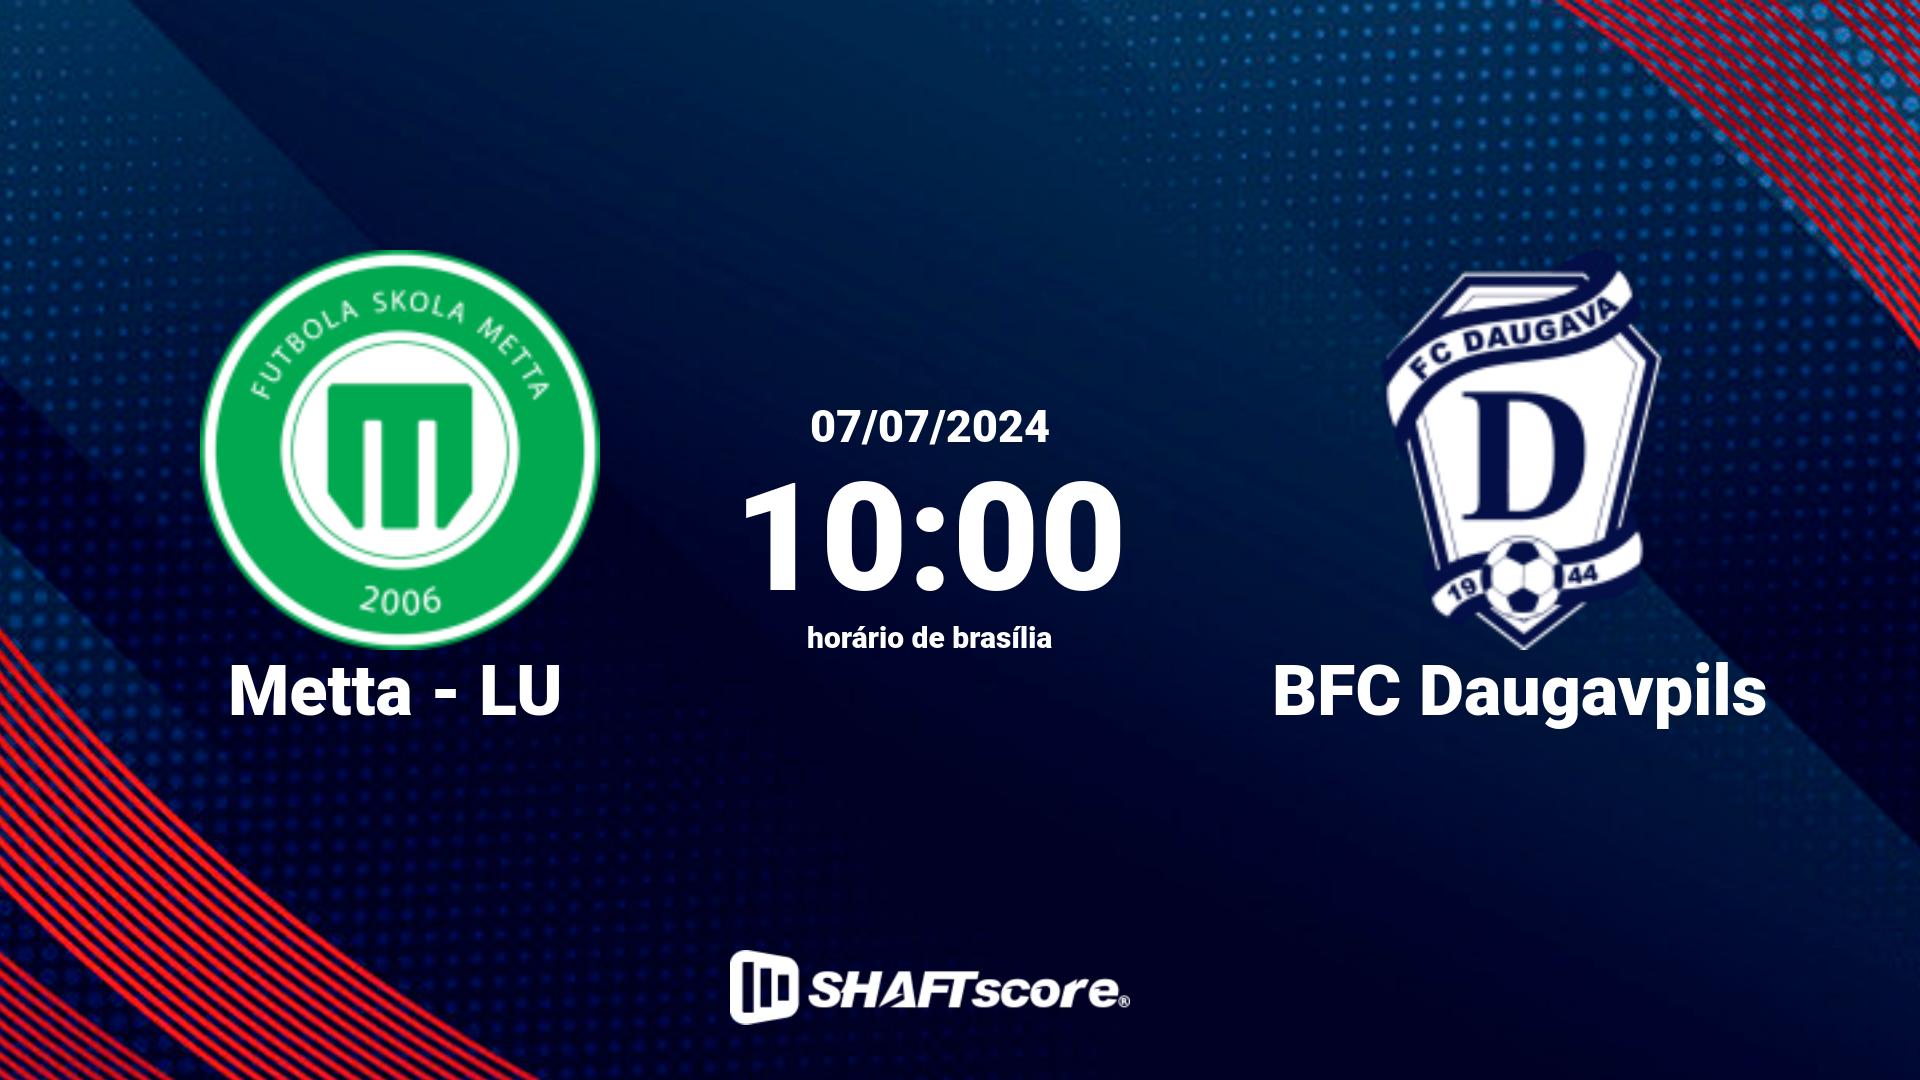 Estatísticas do jogo Metta - LU vs BFC Daugavpils 07.07 10:00